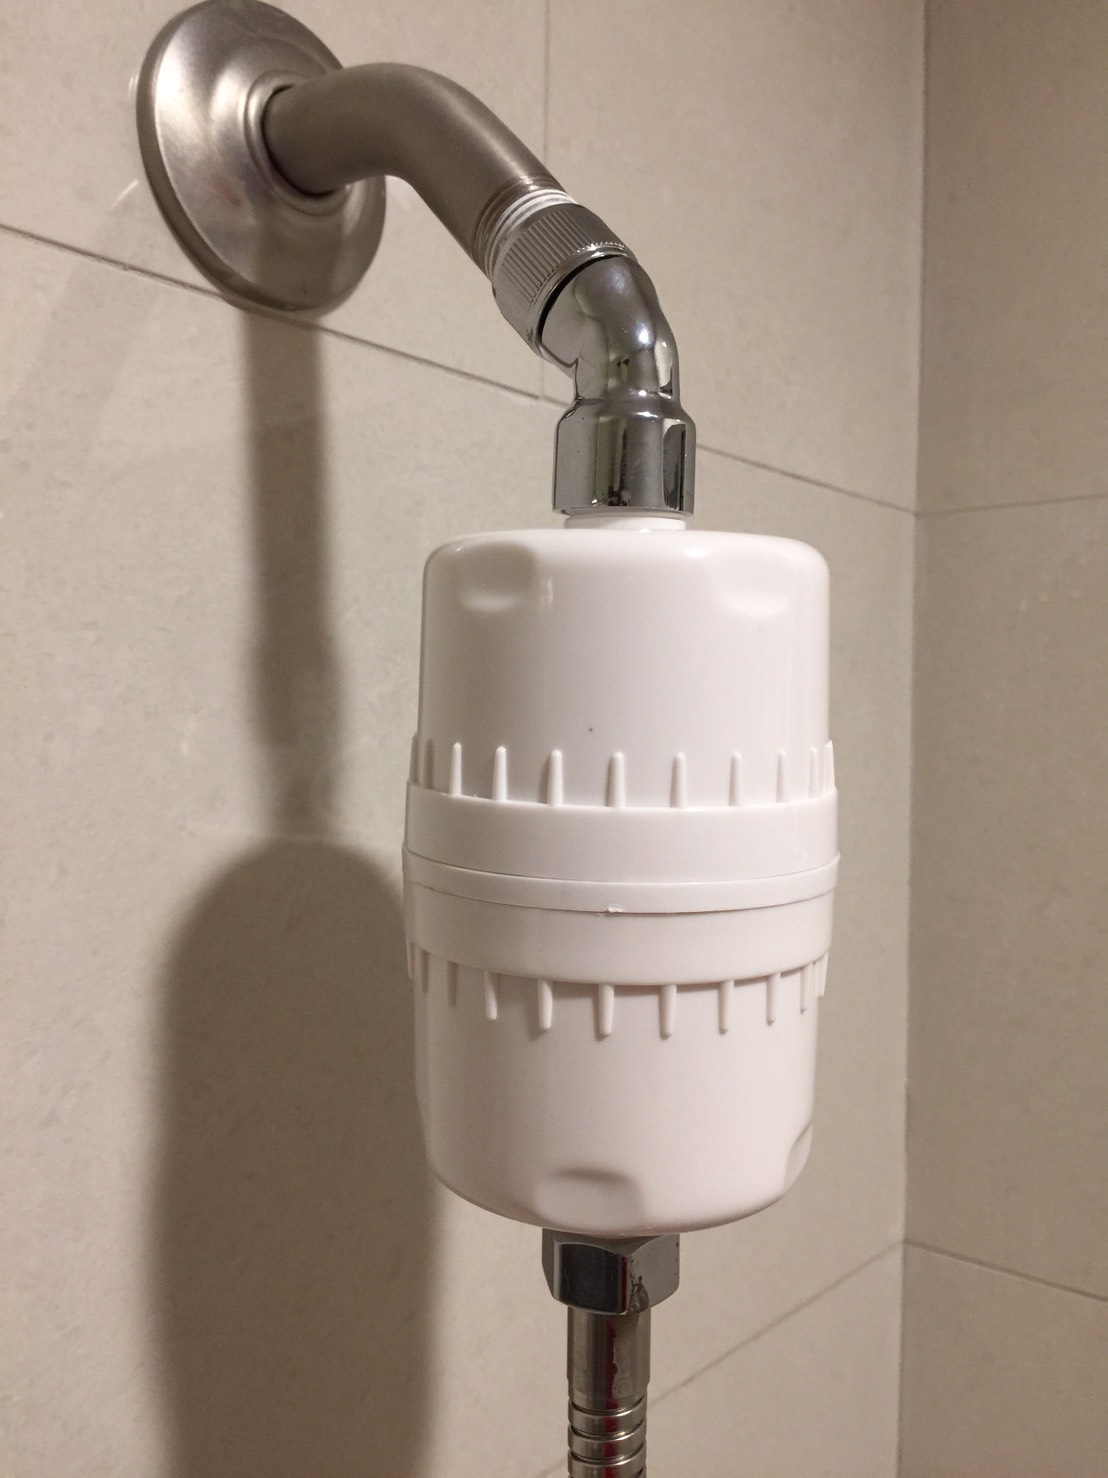 Chlorine Filter For Bathtub Faucet Faucet Ideas Site